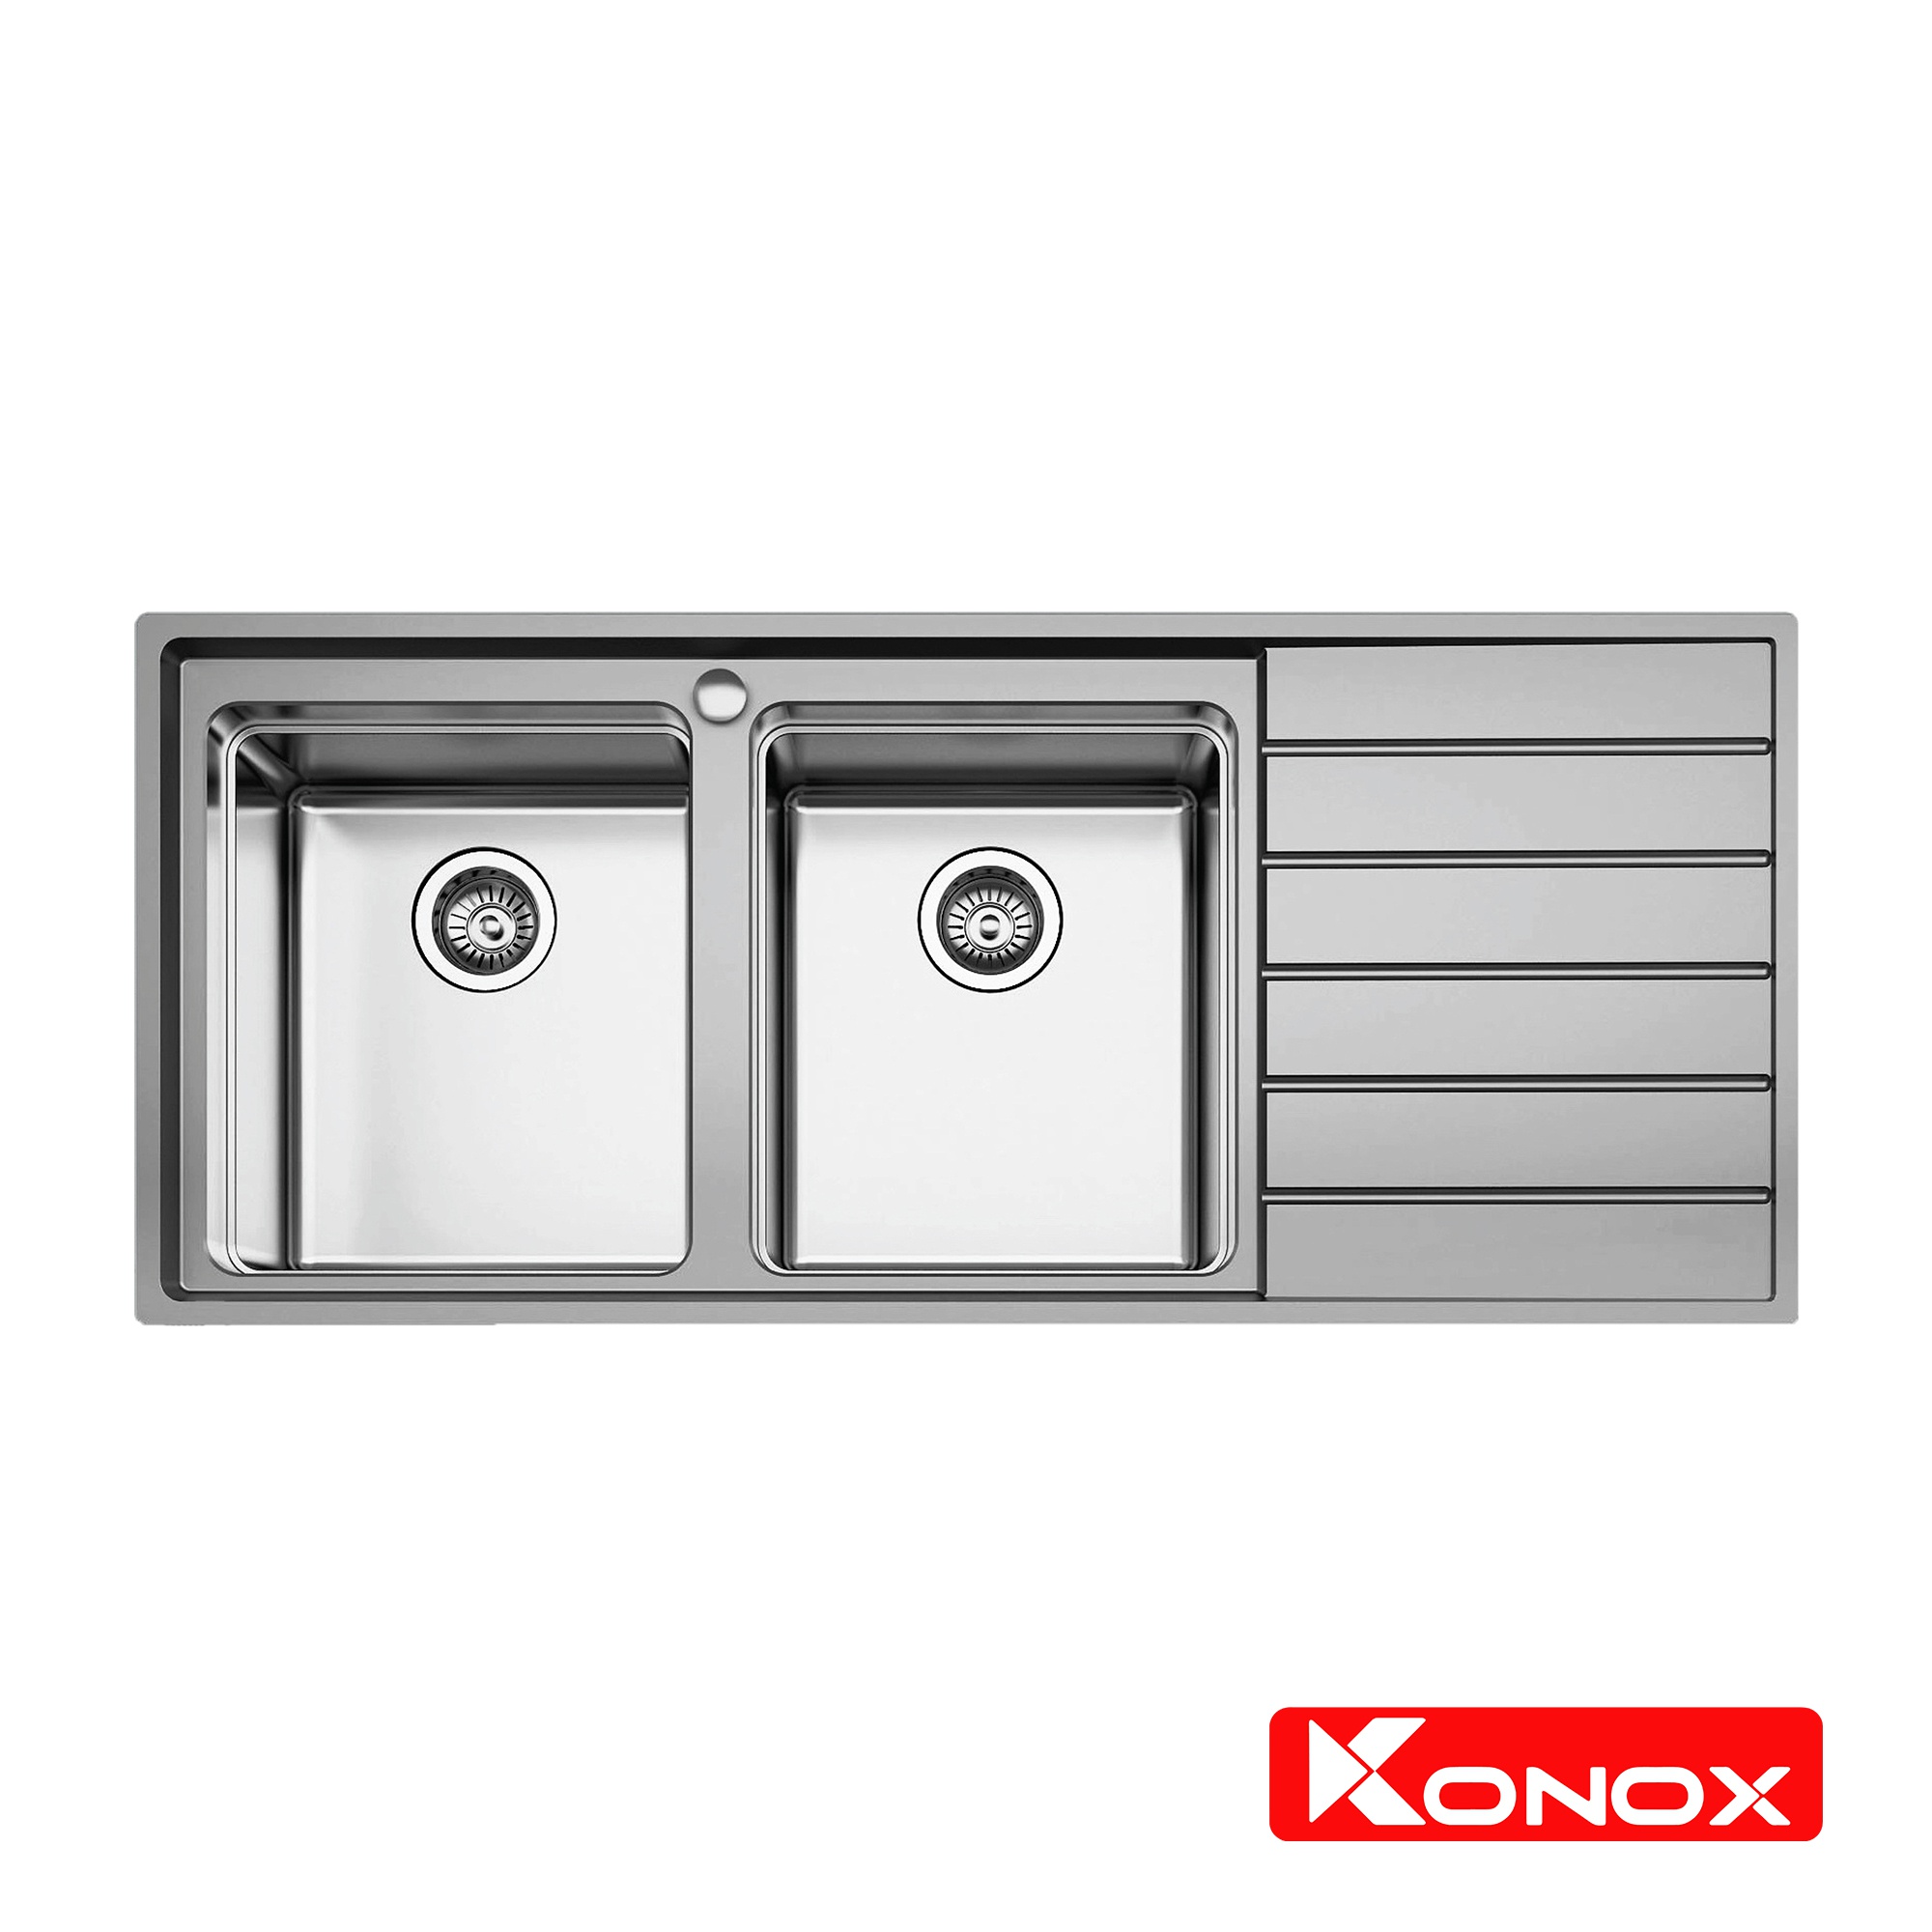 Chậu rửa Konox có bàn chờ - Premium KS11650 2B